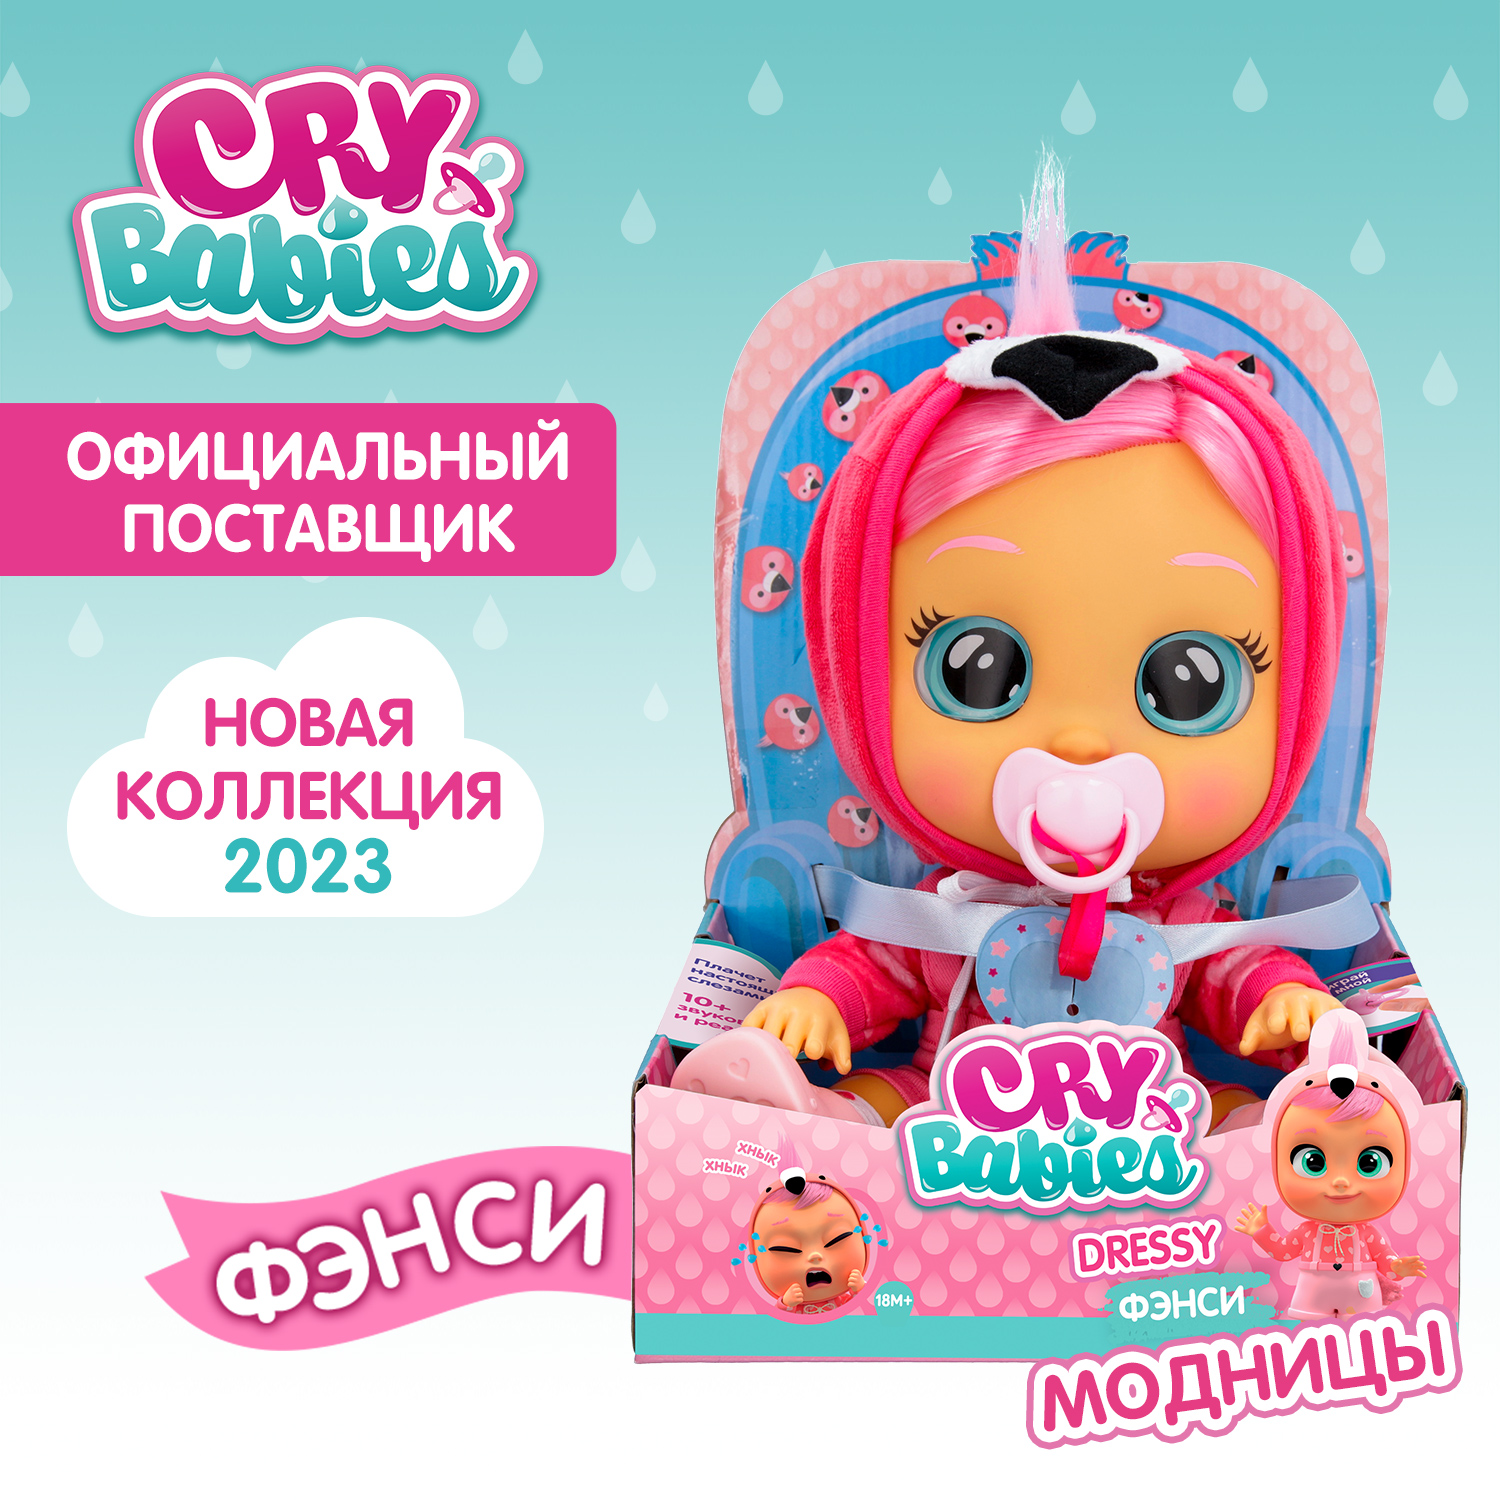 Кукла Cry Babies Фэнси Модница, интерактивная, плачущая, 40886 край бебис кукла бруни fantasy интерактивная плачущая cry babies